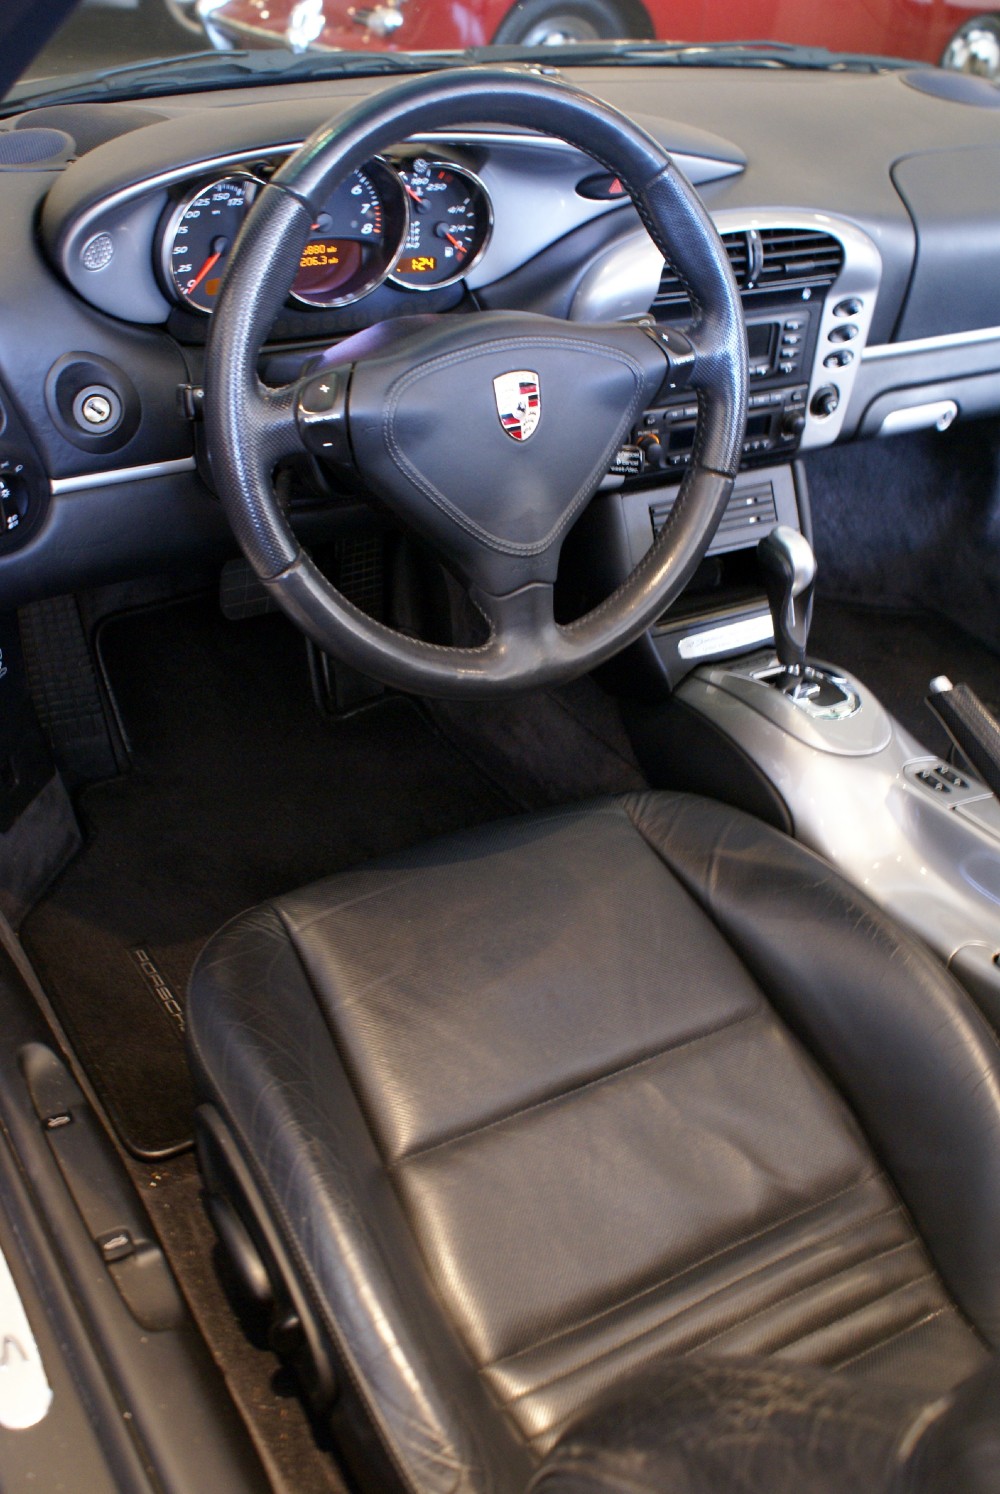 Used 2004 Porsche Boxster S Anniversary Edition